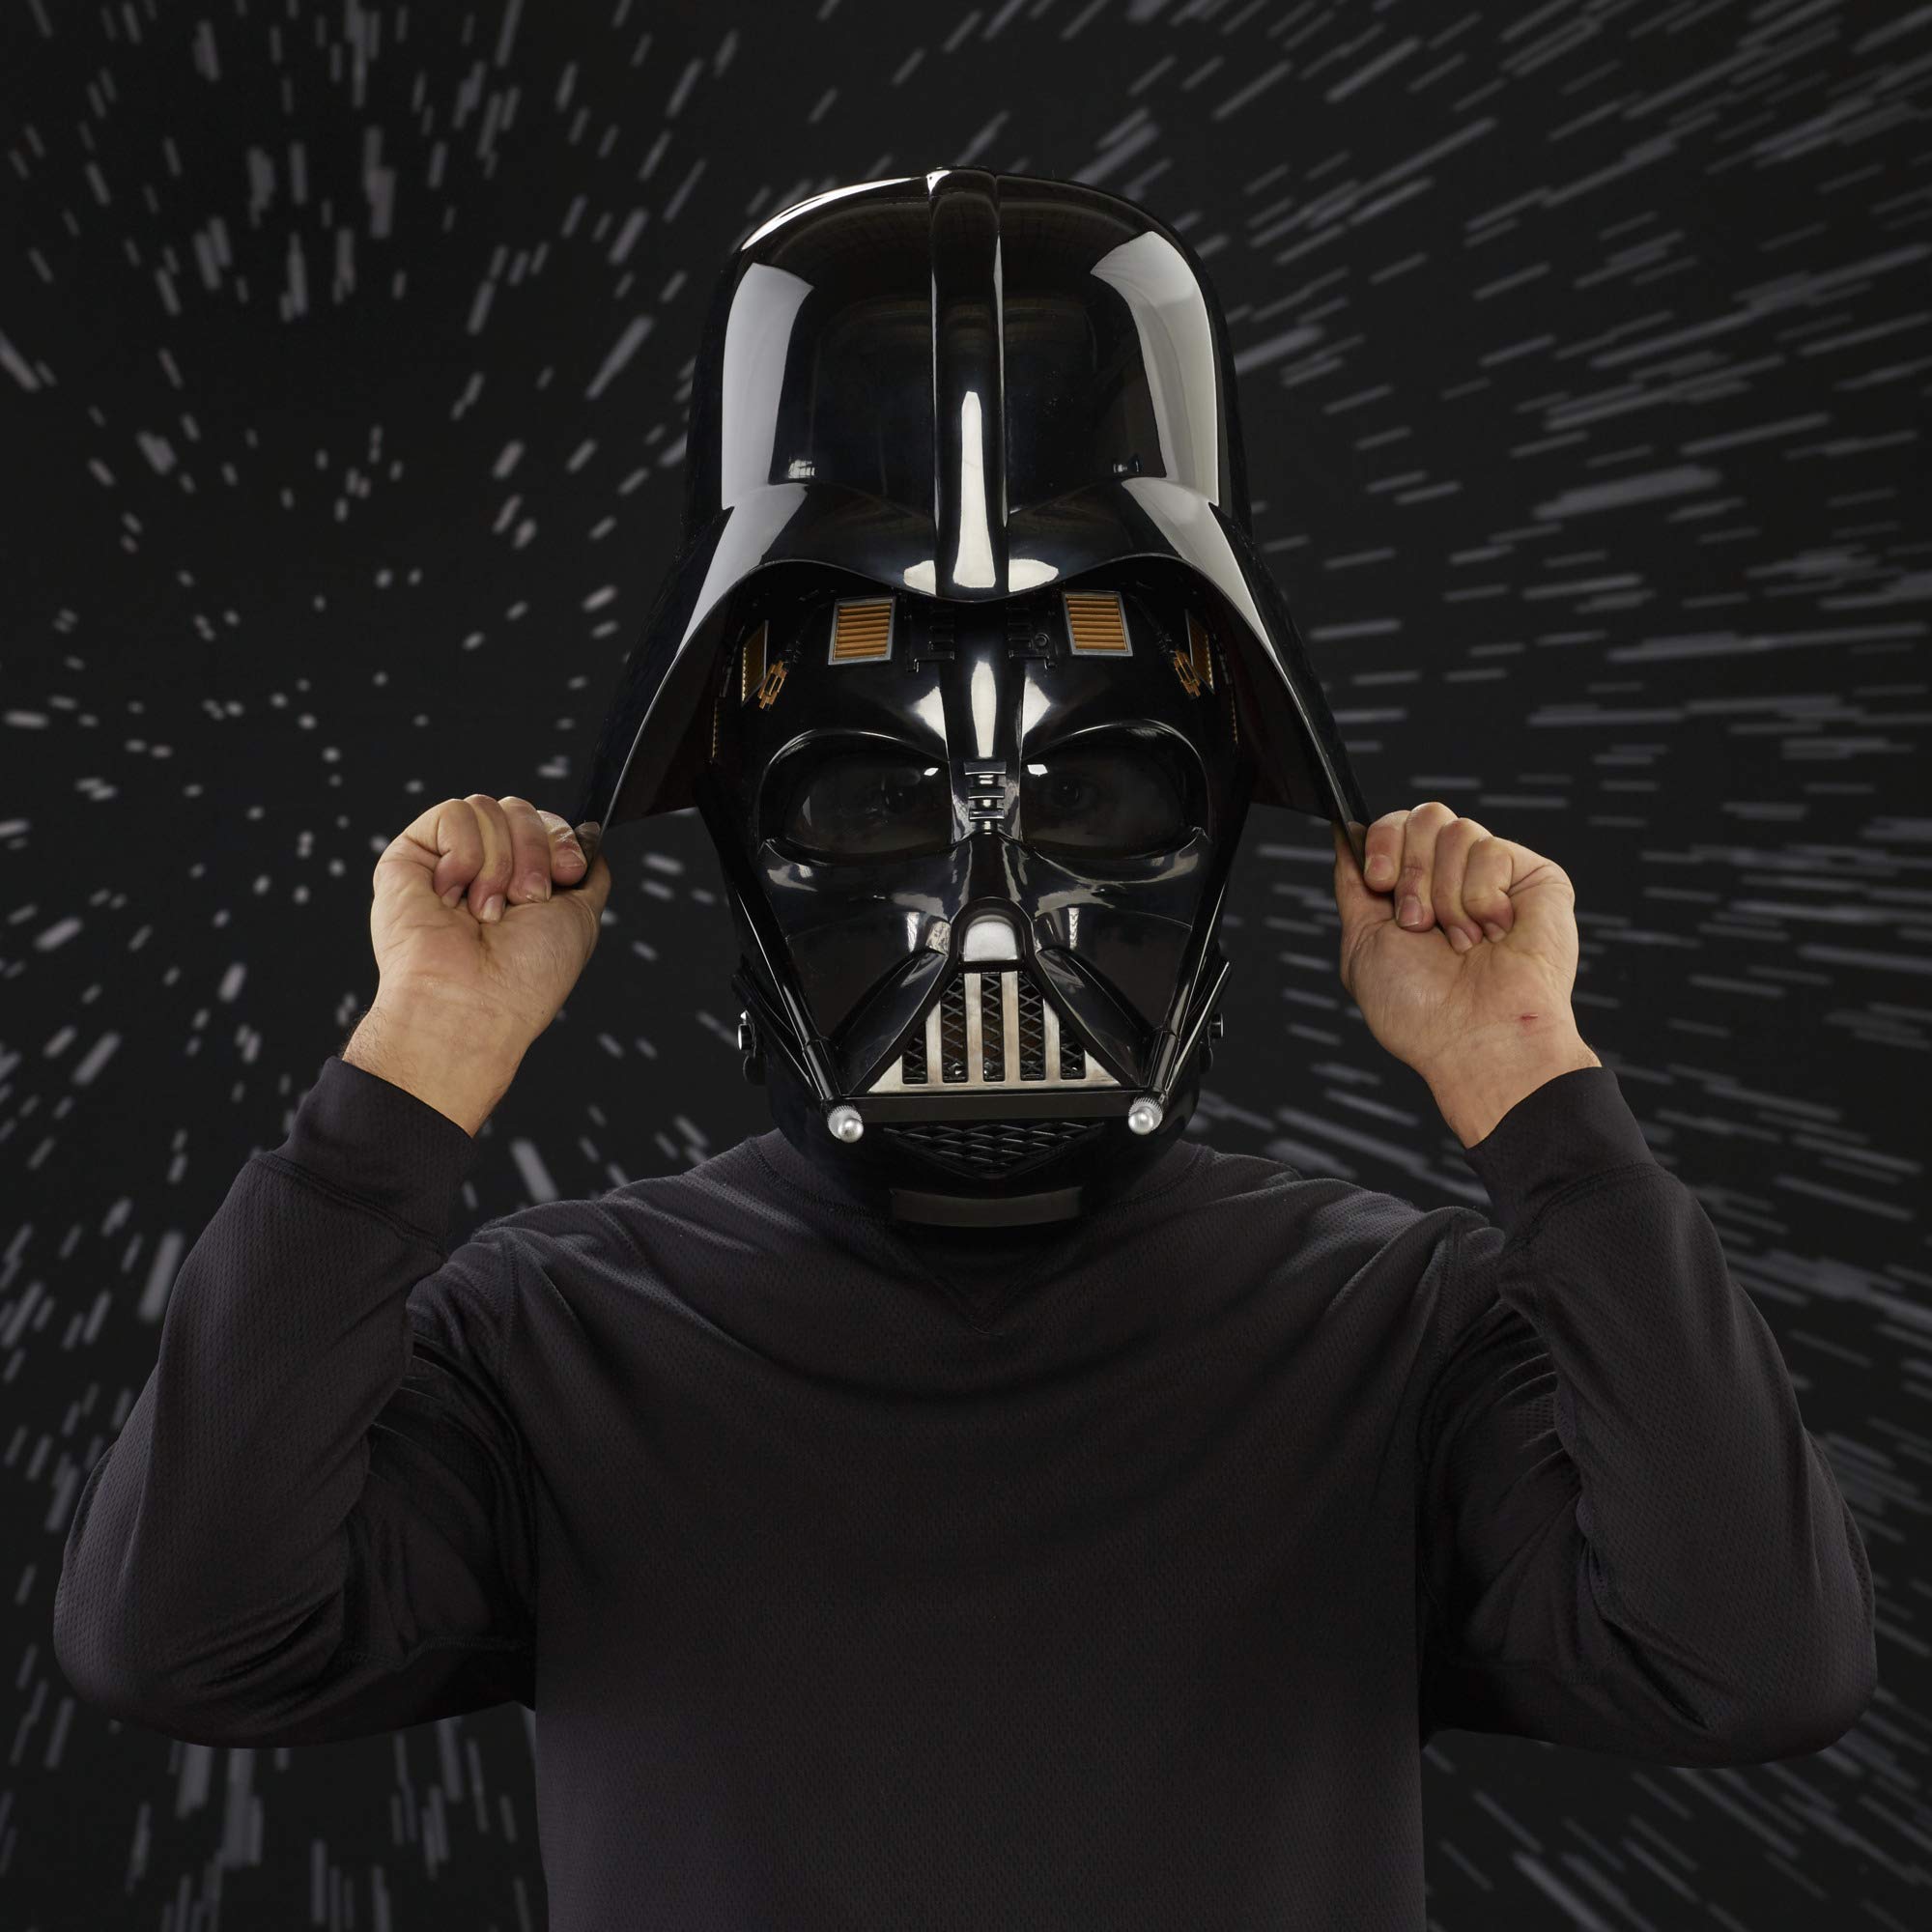 Star Wars Black Series Helmet Action Figure